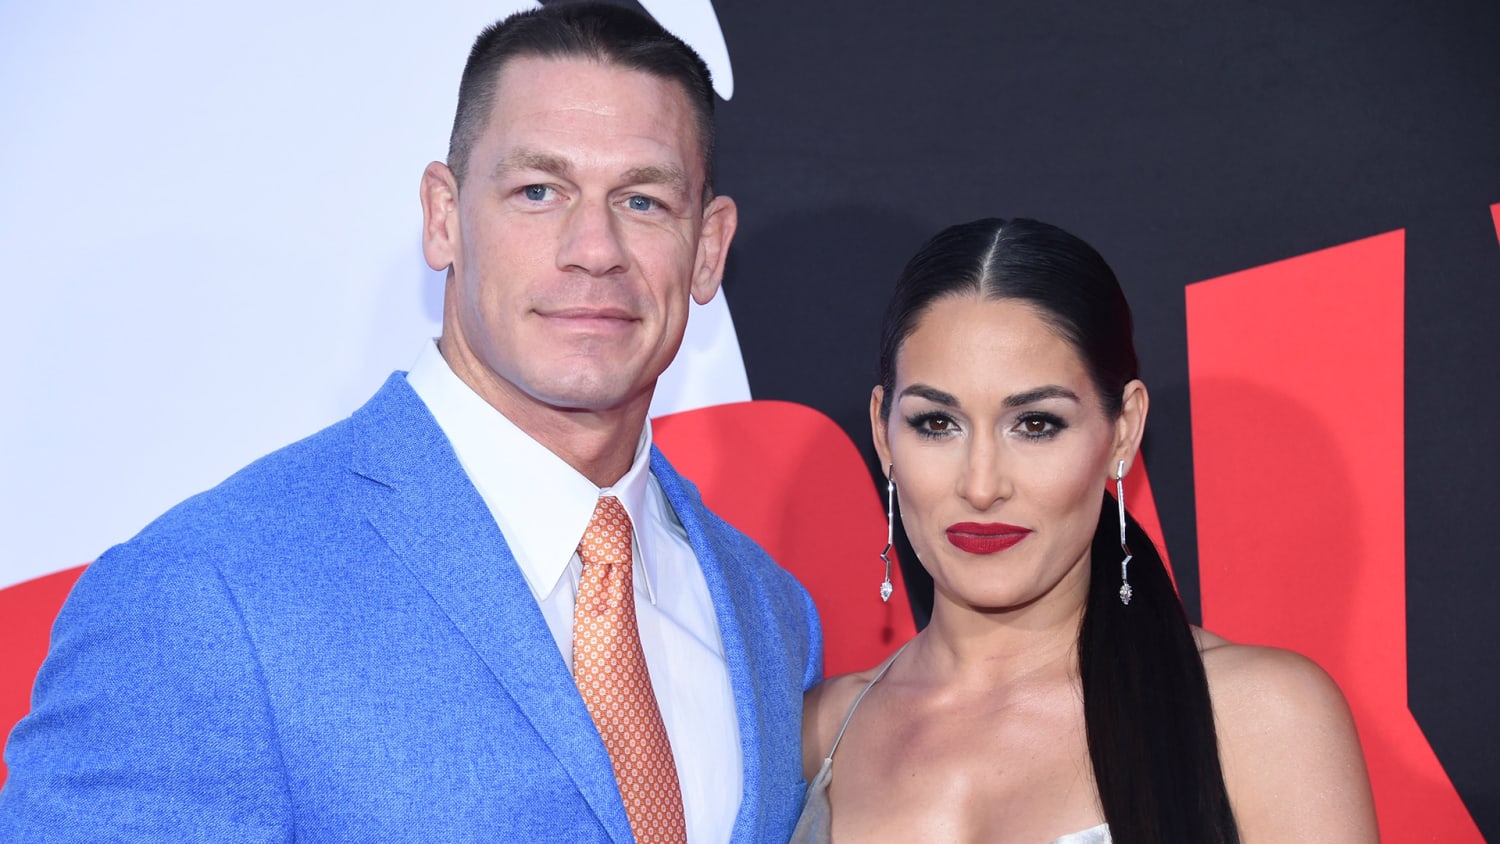 Nikki Bella says she misses John Cena, feels 'confused' after split